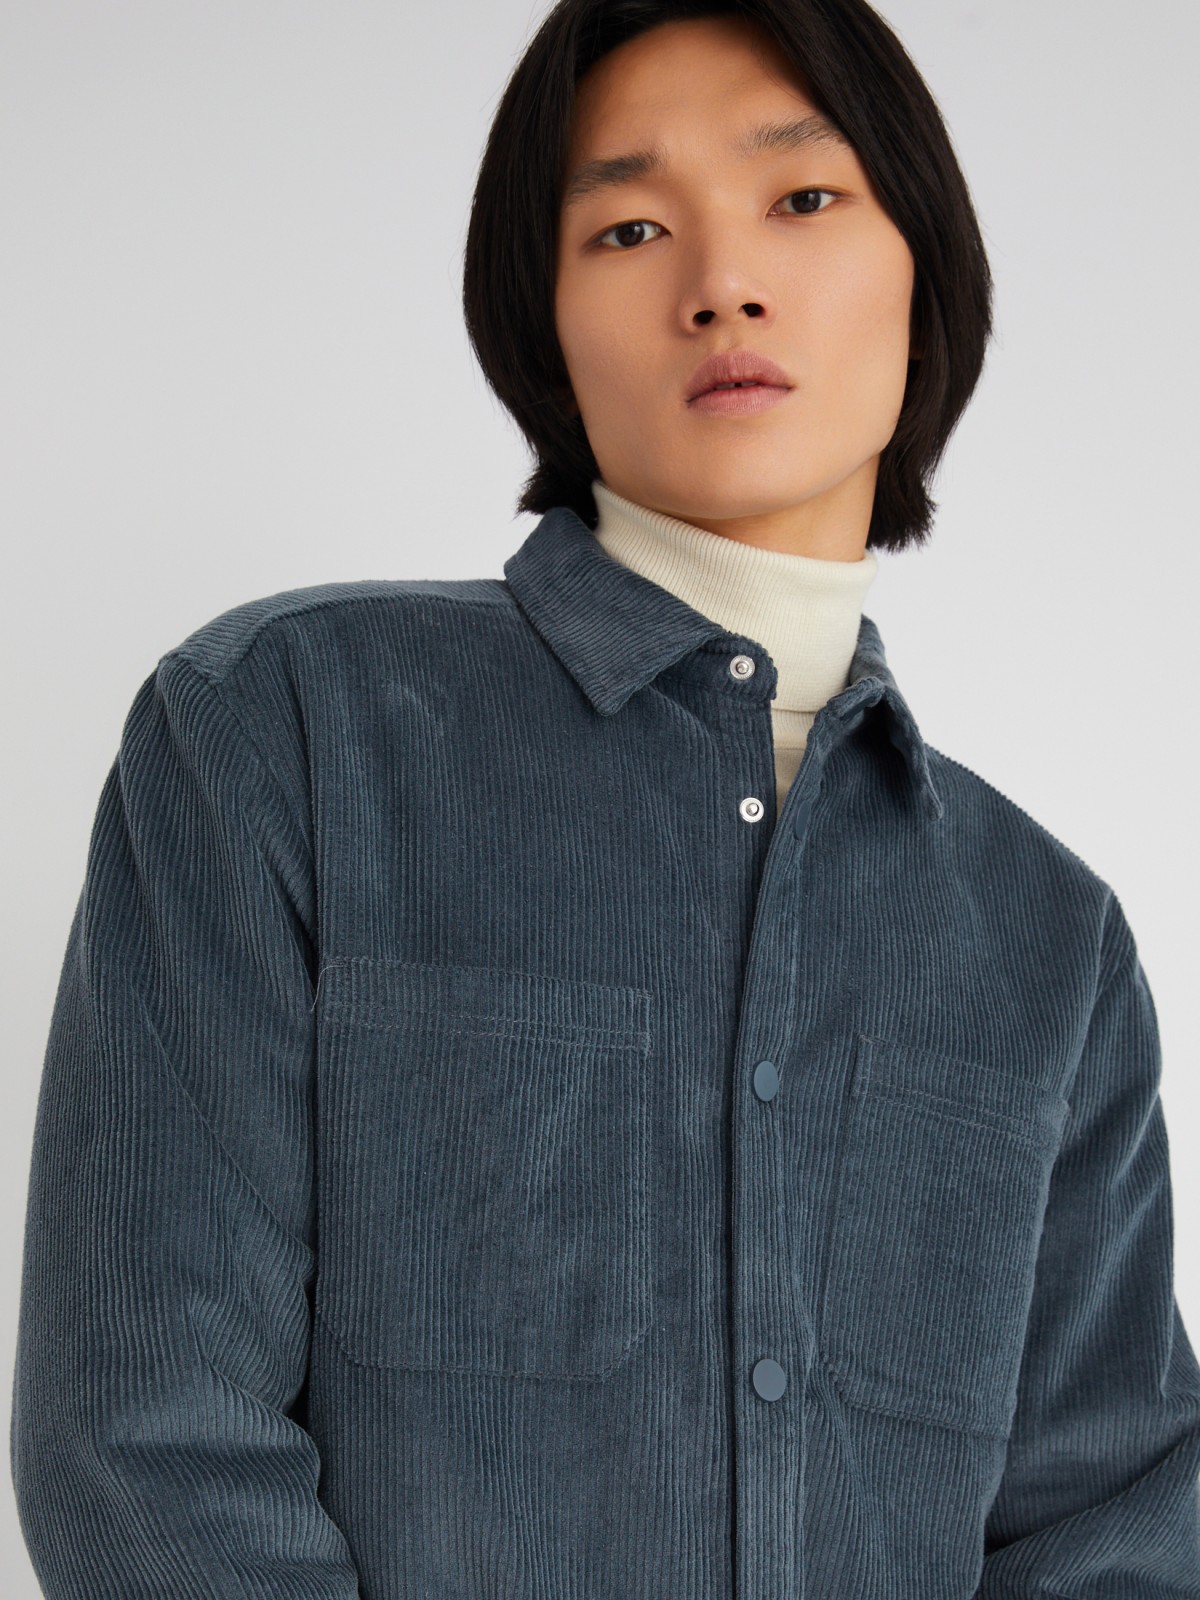 Утеплённая вельветовая куртка-рубашка на синтепоне zolla 013325159134, цвет синий, размер M - фото 4